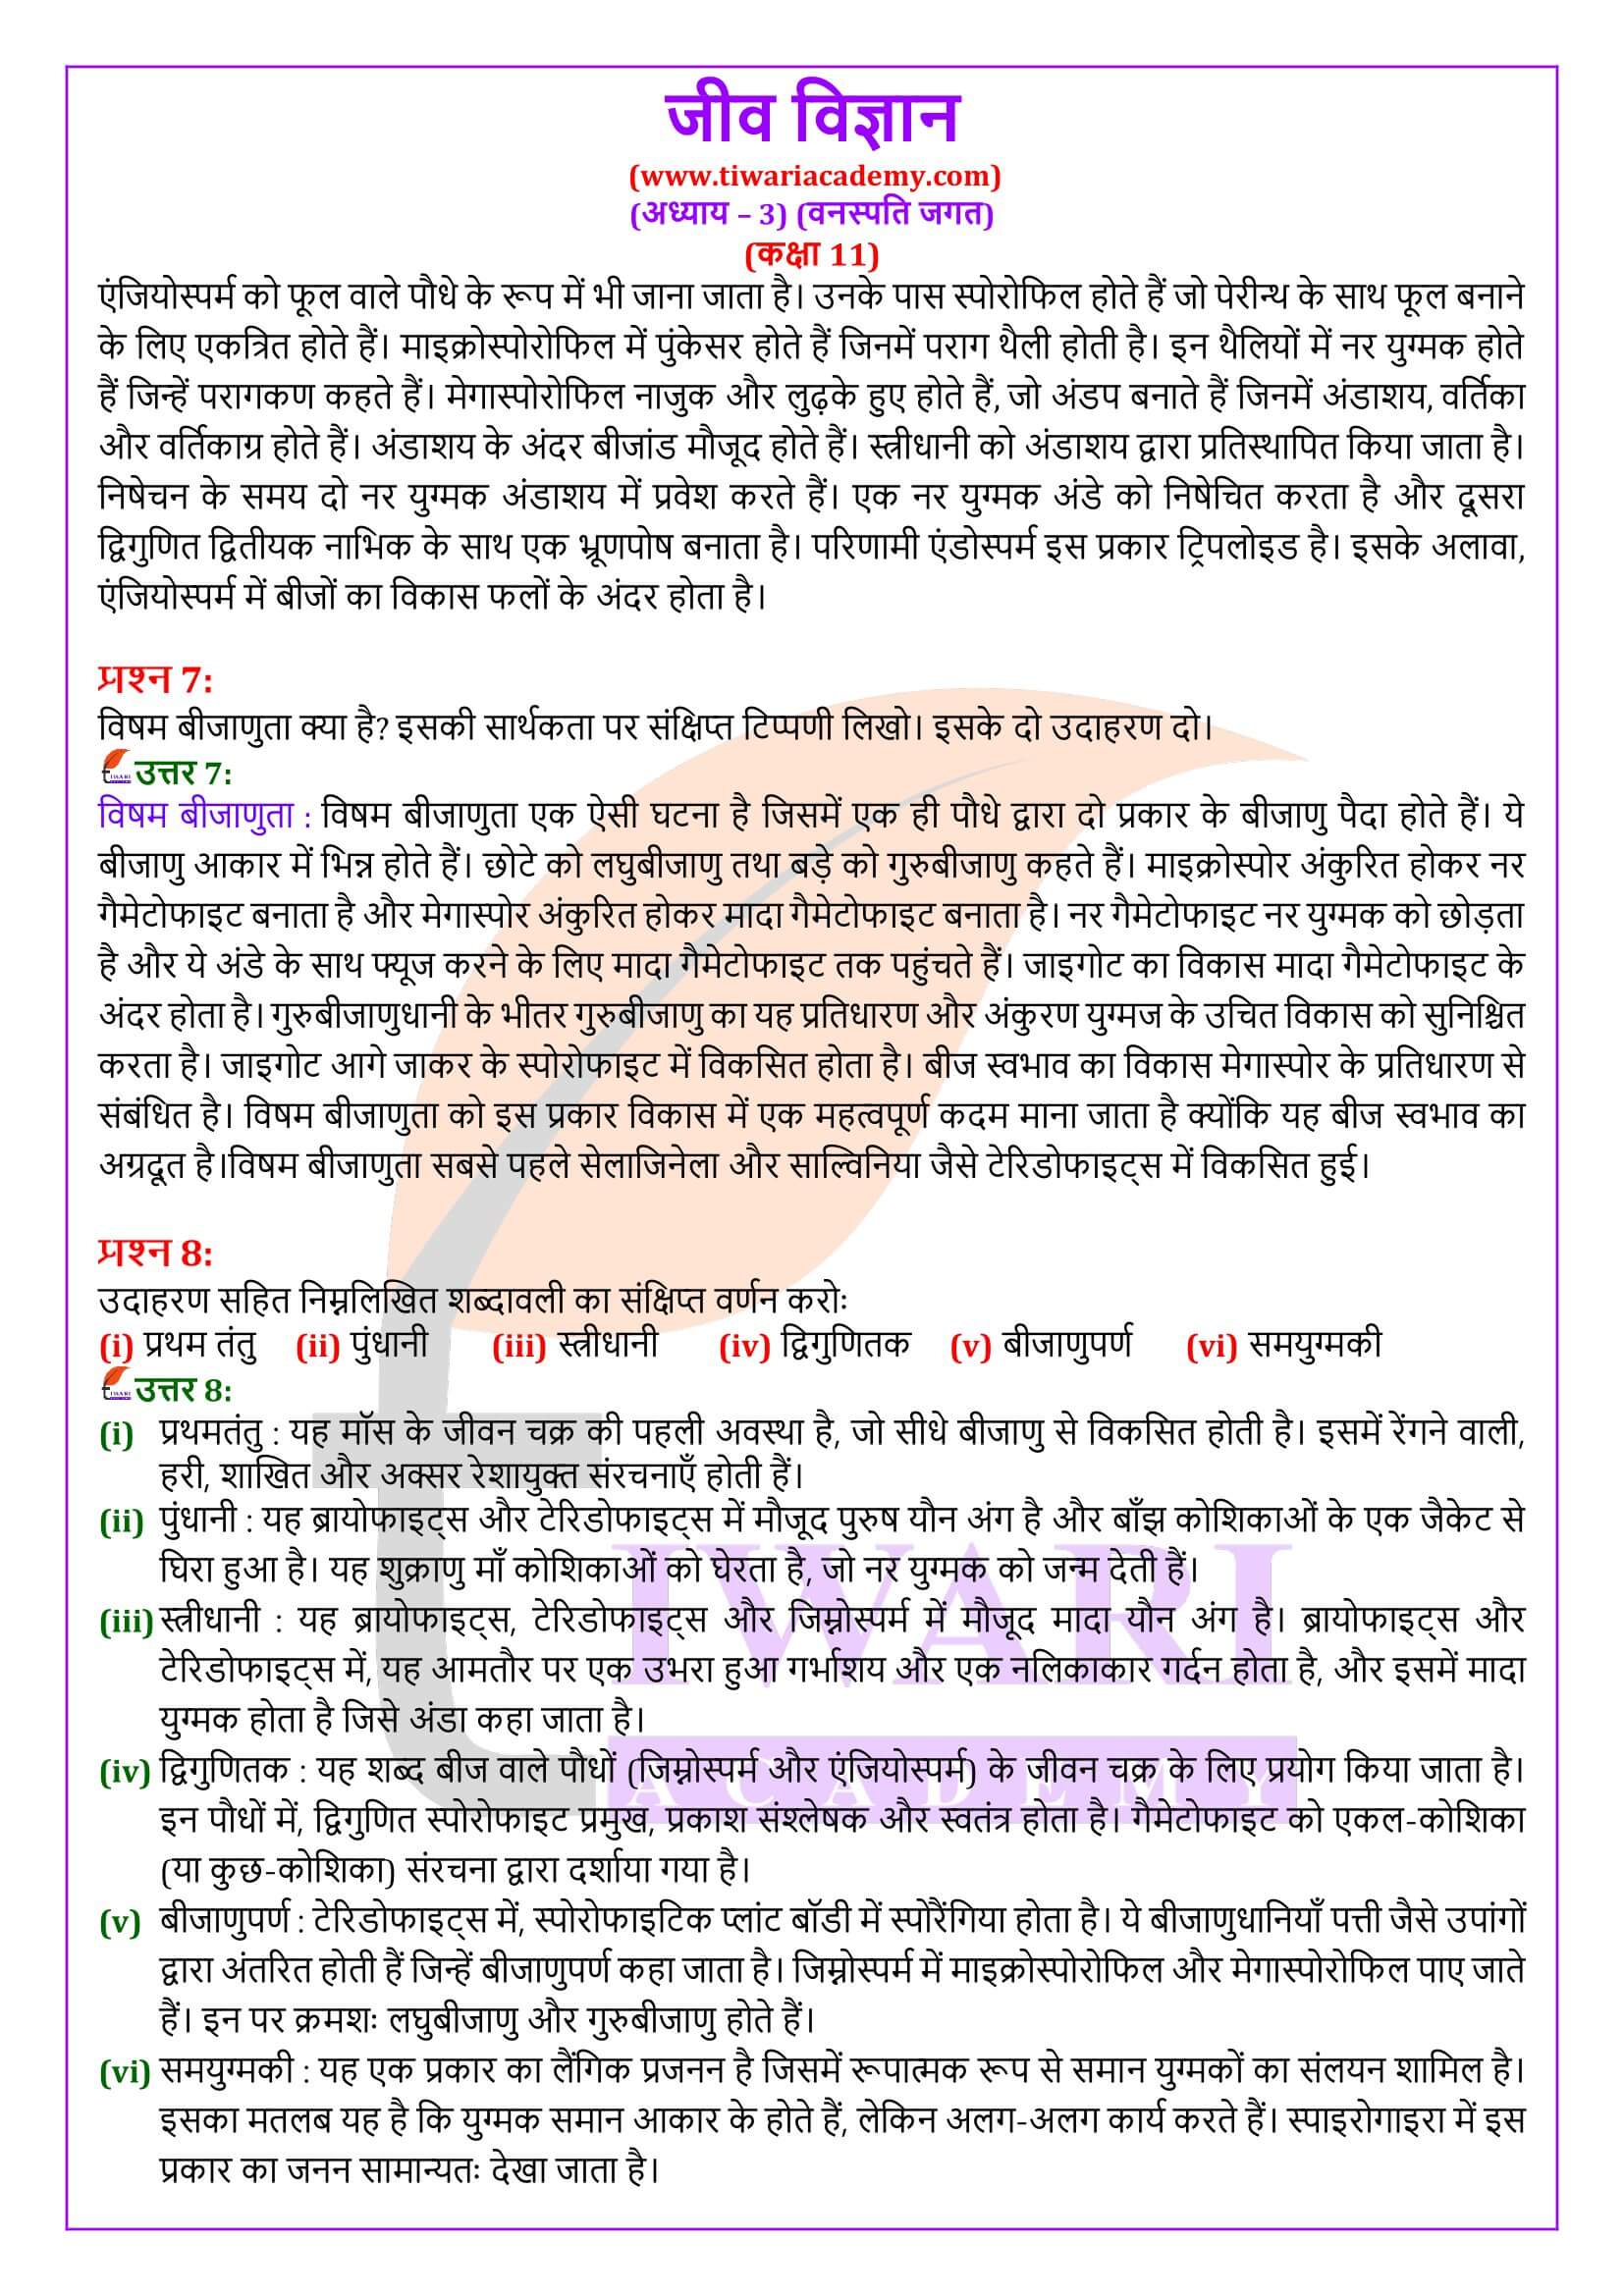 कक्षा 11 जीव विज्ञान अध्याय 3 हिंदी में